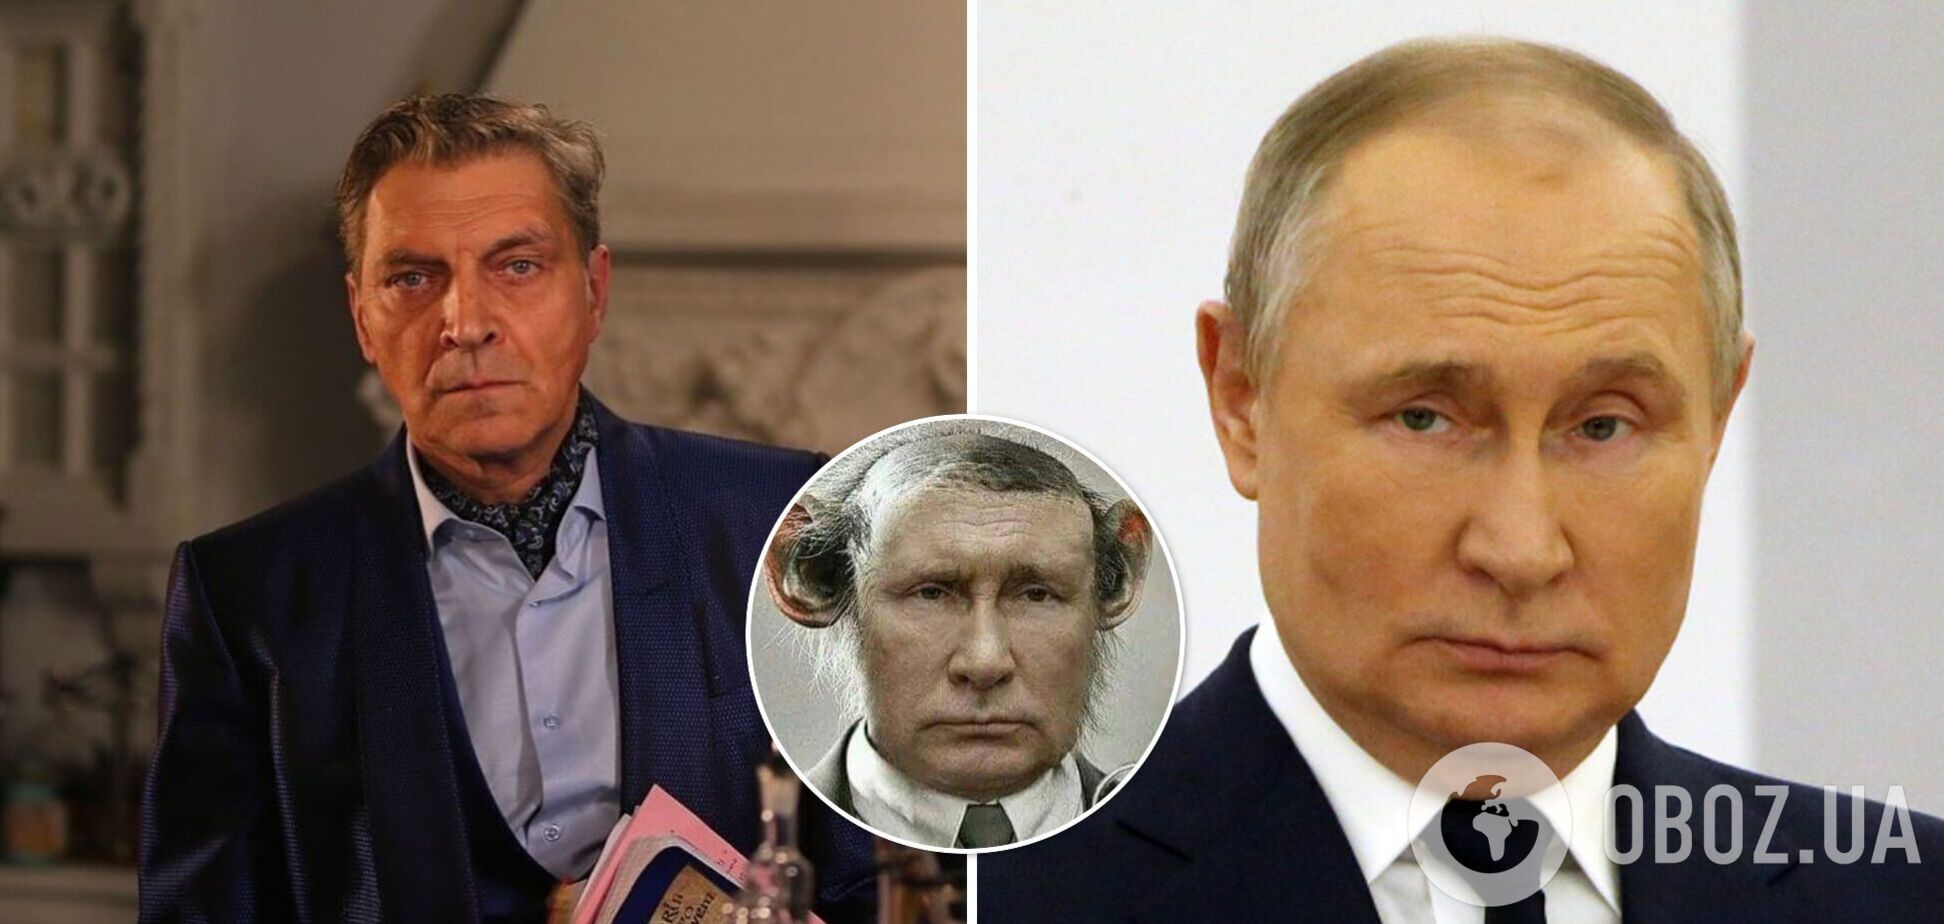 Обезьяна с гранатой. Невзоров воссоздал точный портрет Путина